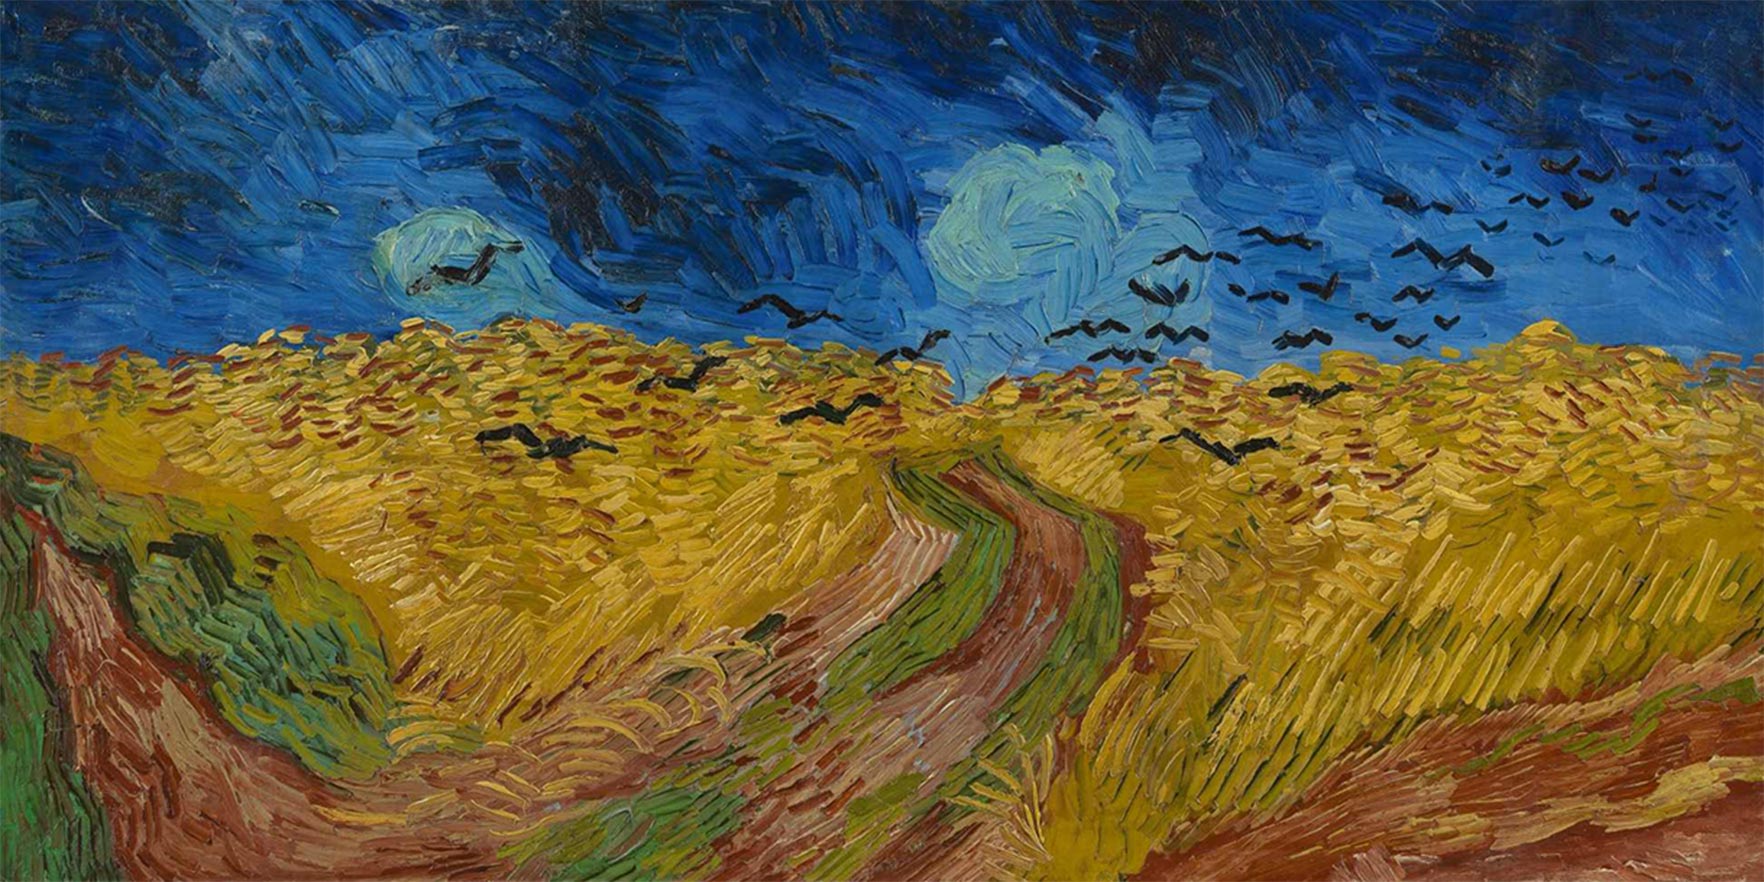 Quadro panorâmico - Vincent van Gogh - Campo de trigo com corvos